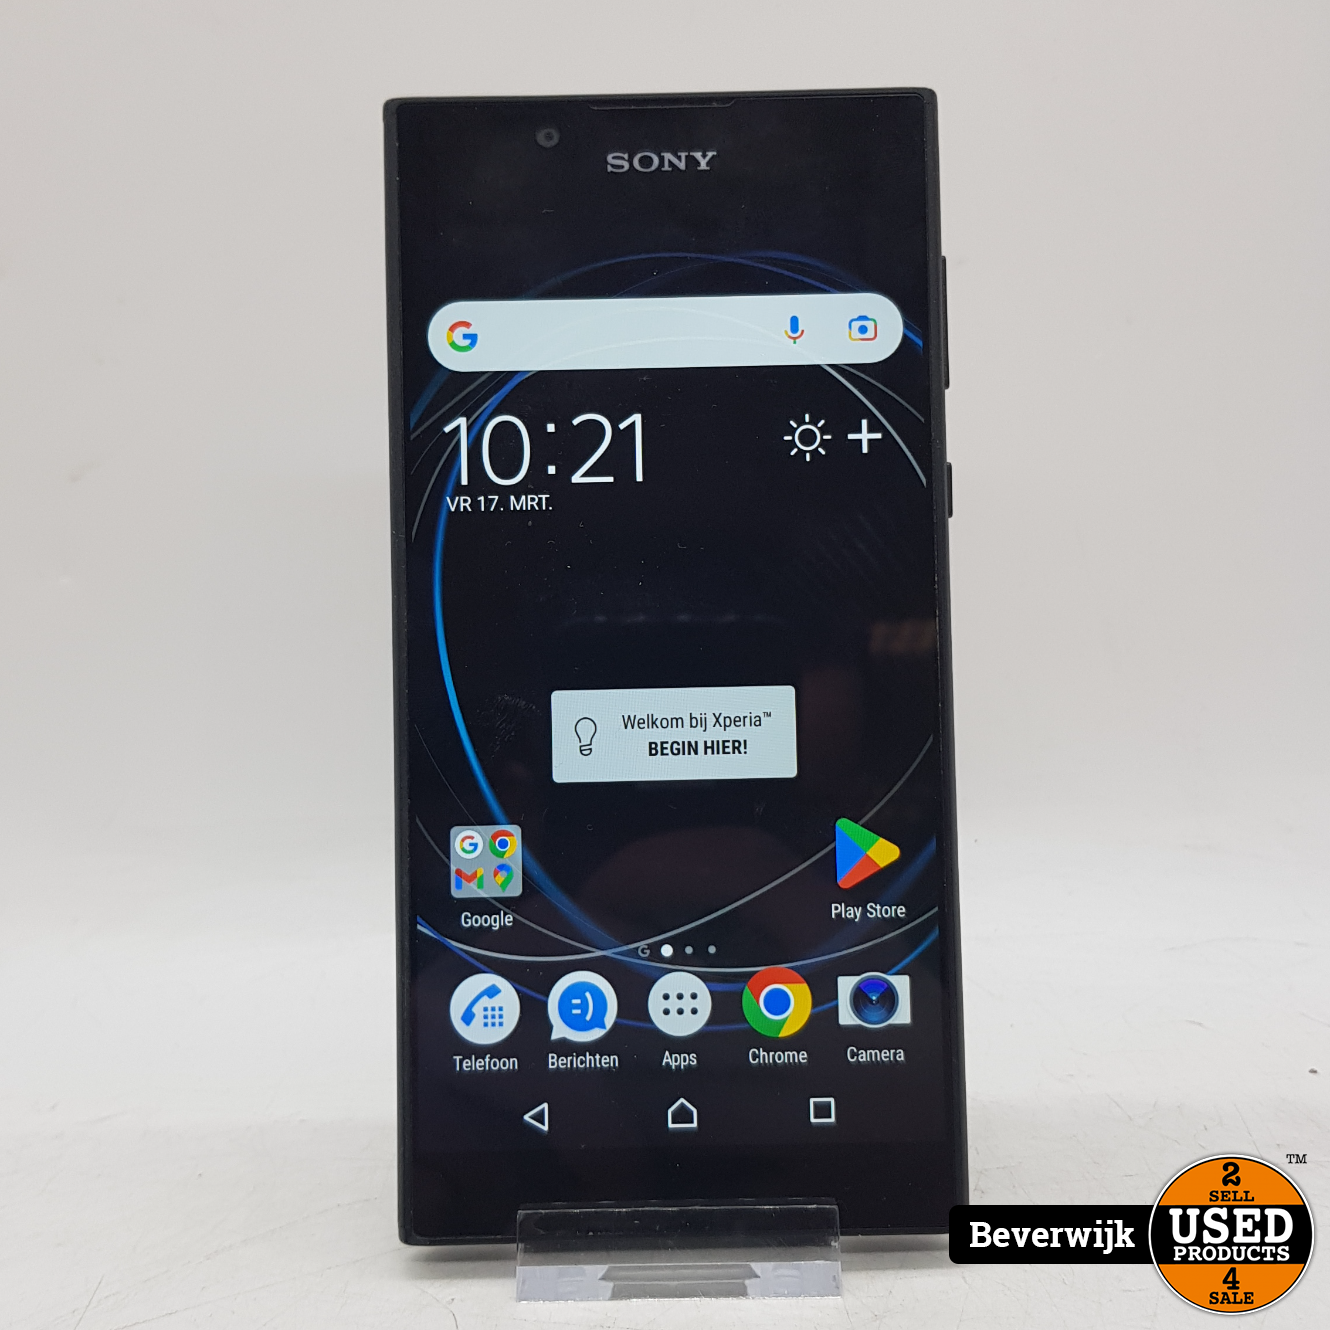 Uitvoerbaar Motivatie houder Sony Xperia L1 16 GB Android 7 in Goede Staat - Used Products Beverwijk